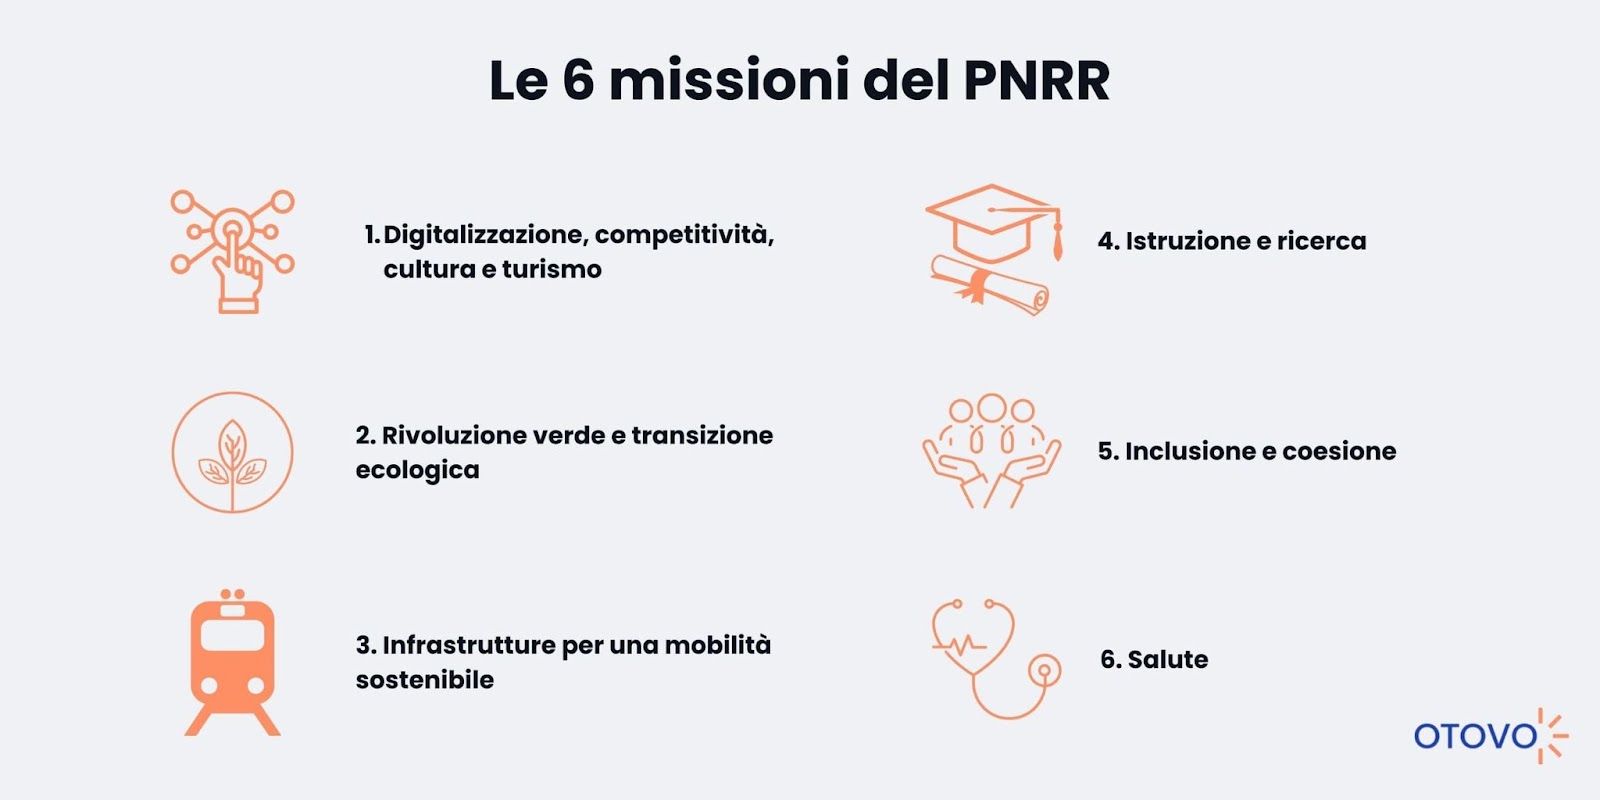 Le 6 missioni del PNRR